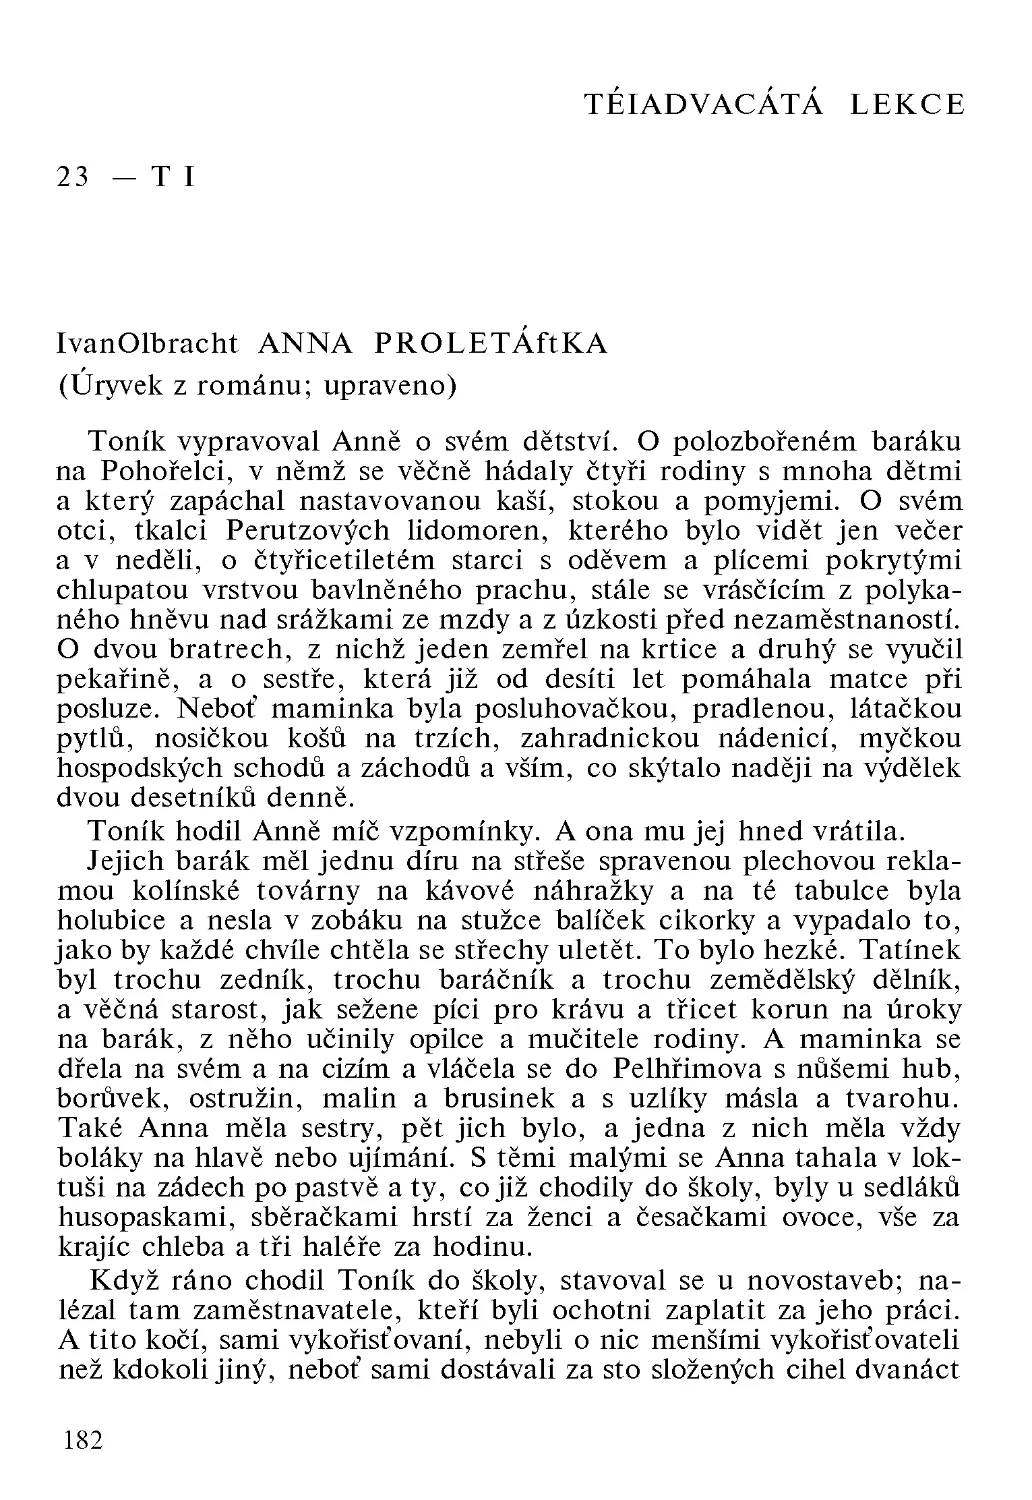 23. Ivan Olbracht, Anna Proletářka. Семья